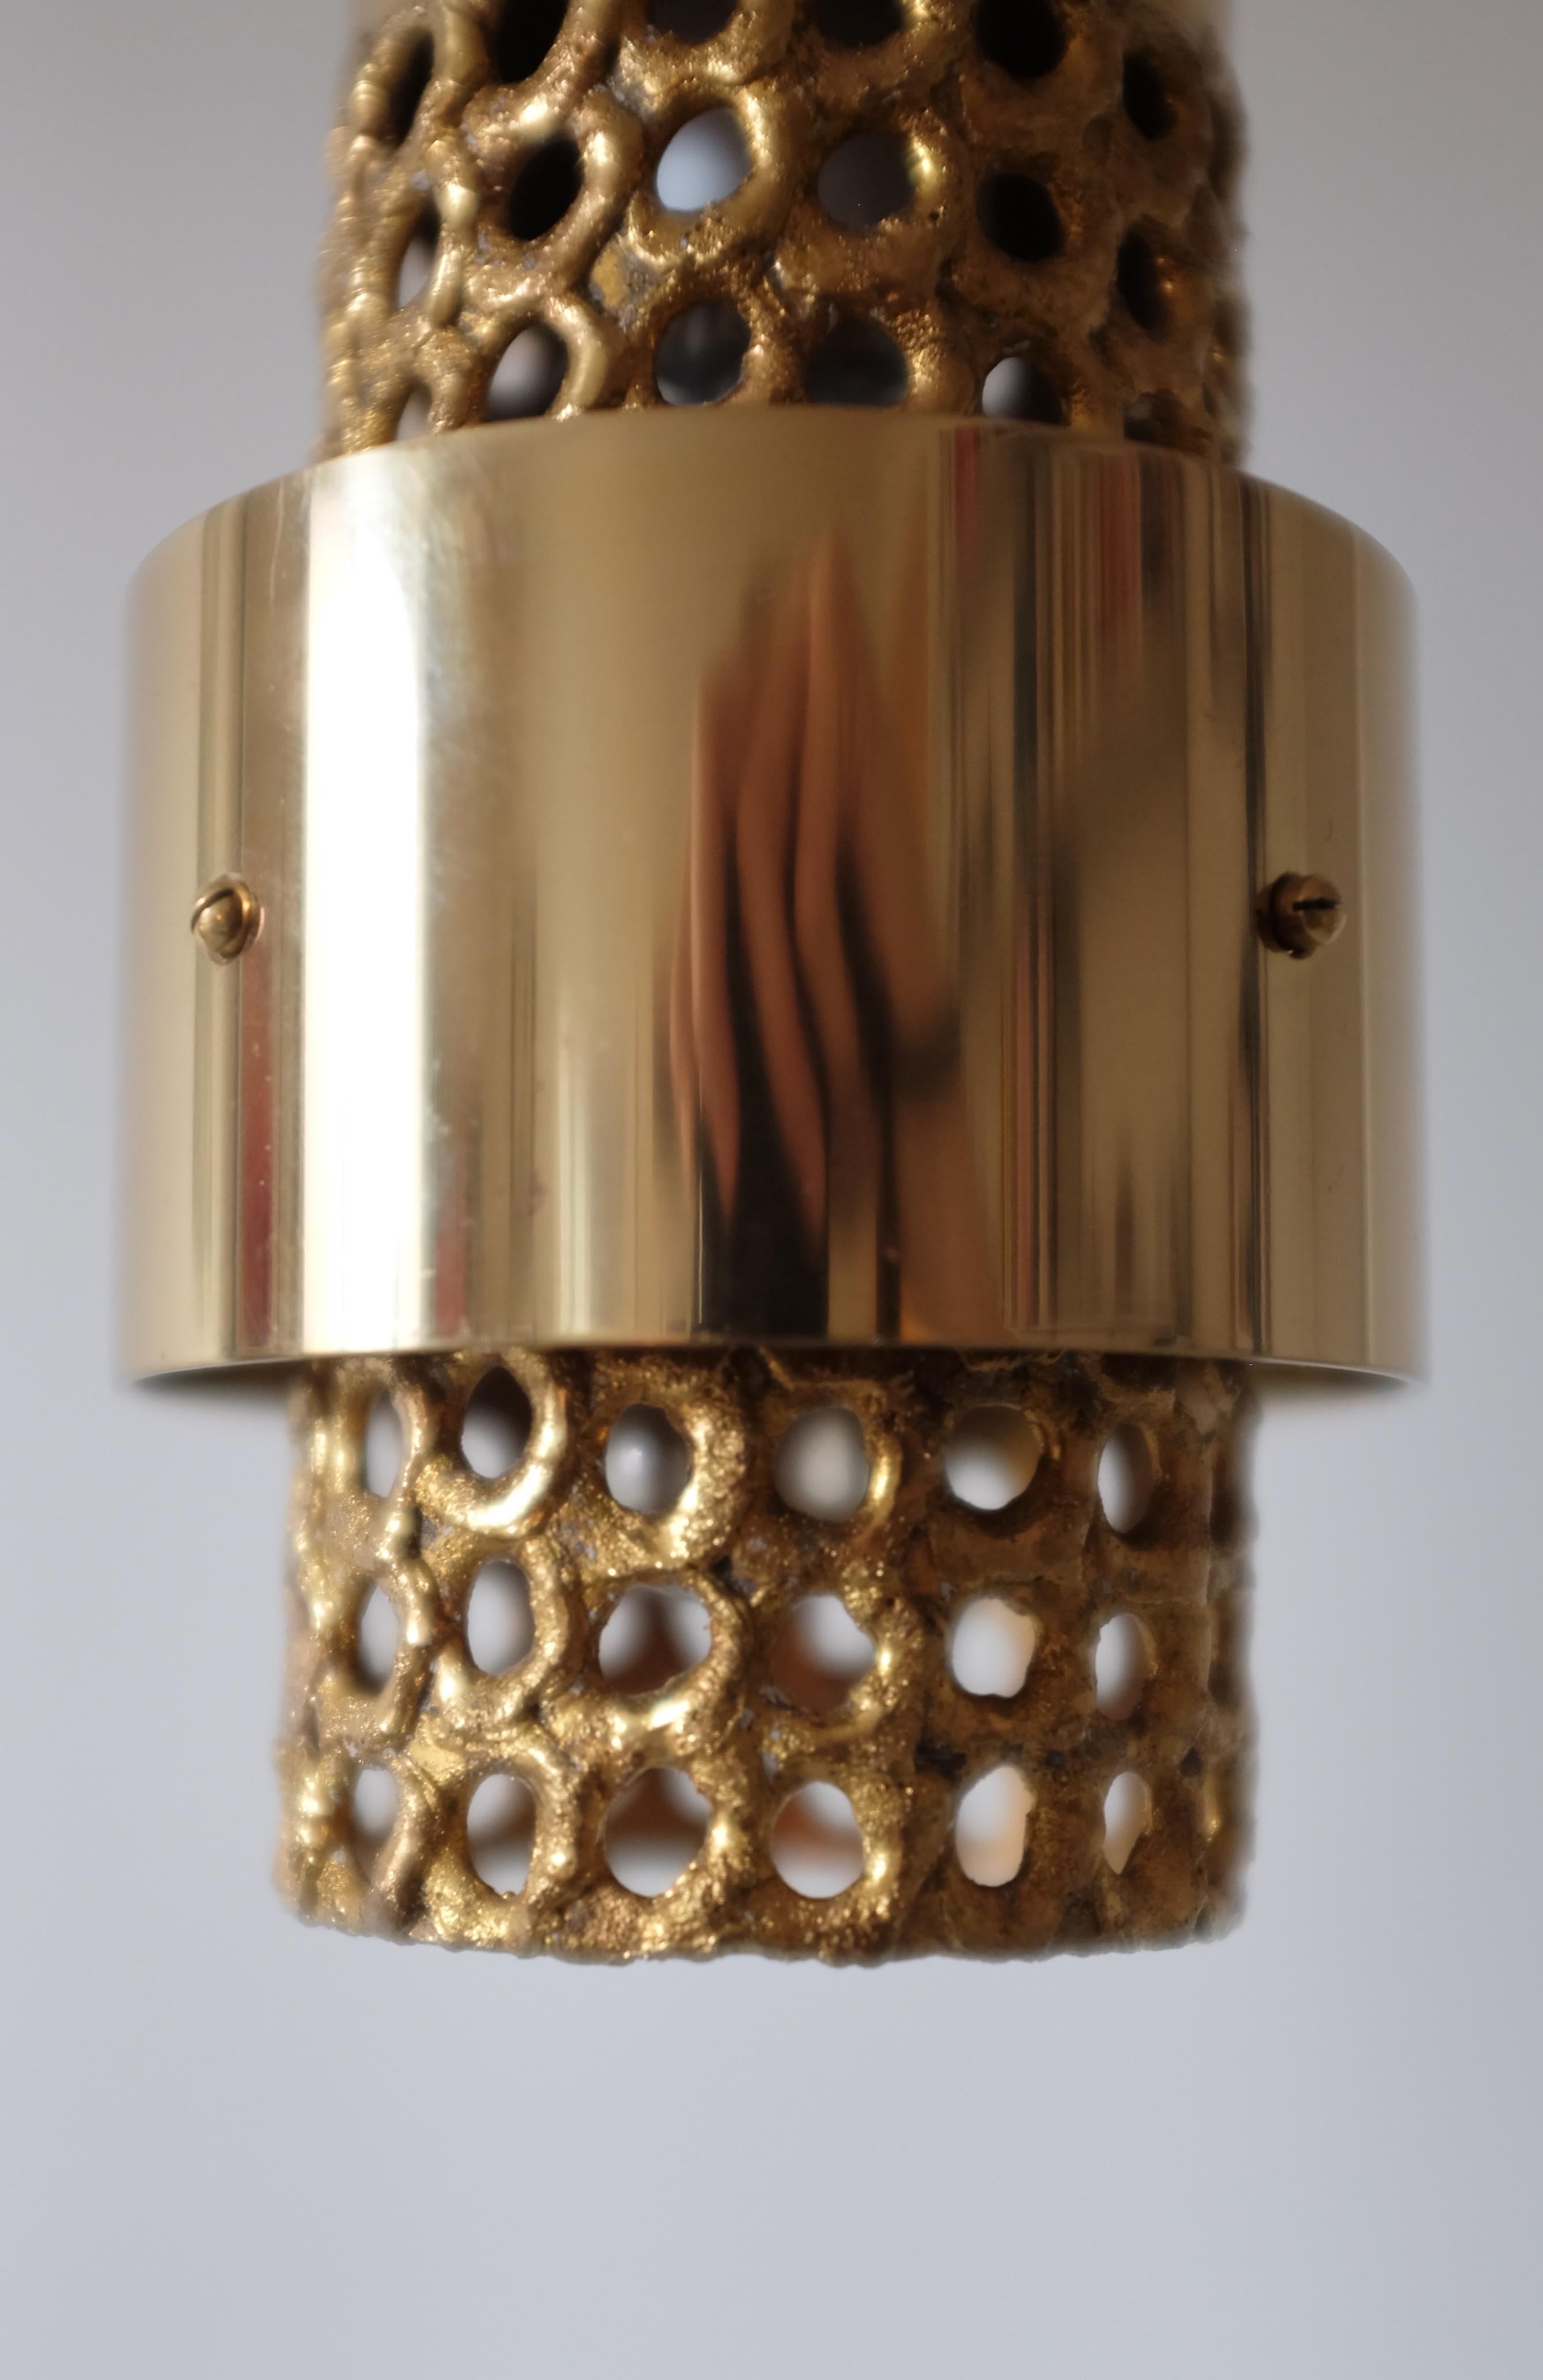 Pendentif en laiton perforé de Pierre Forssell pour Skultuna, Suède. Conçue à l'origine dans les années 1960, cette lampe est l'un des modèles emblématiques de lampes et de lanternes que Forssell a conçus pendant ses années d'activité à Skultuna,